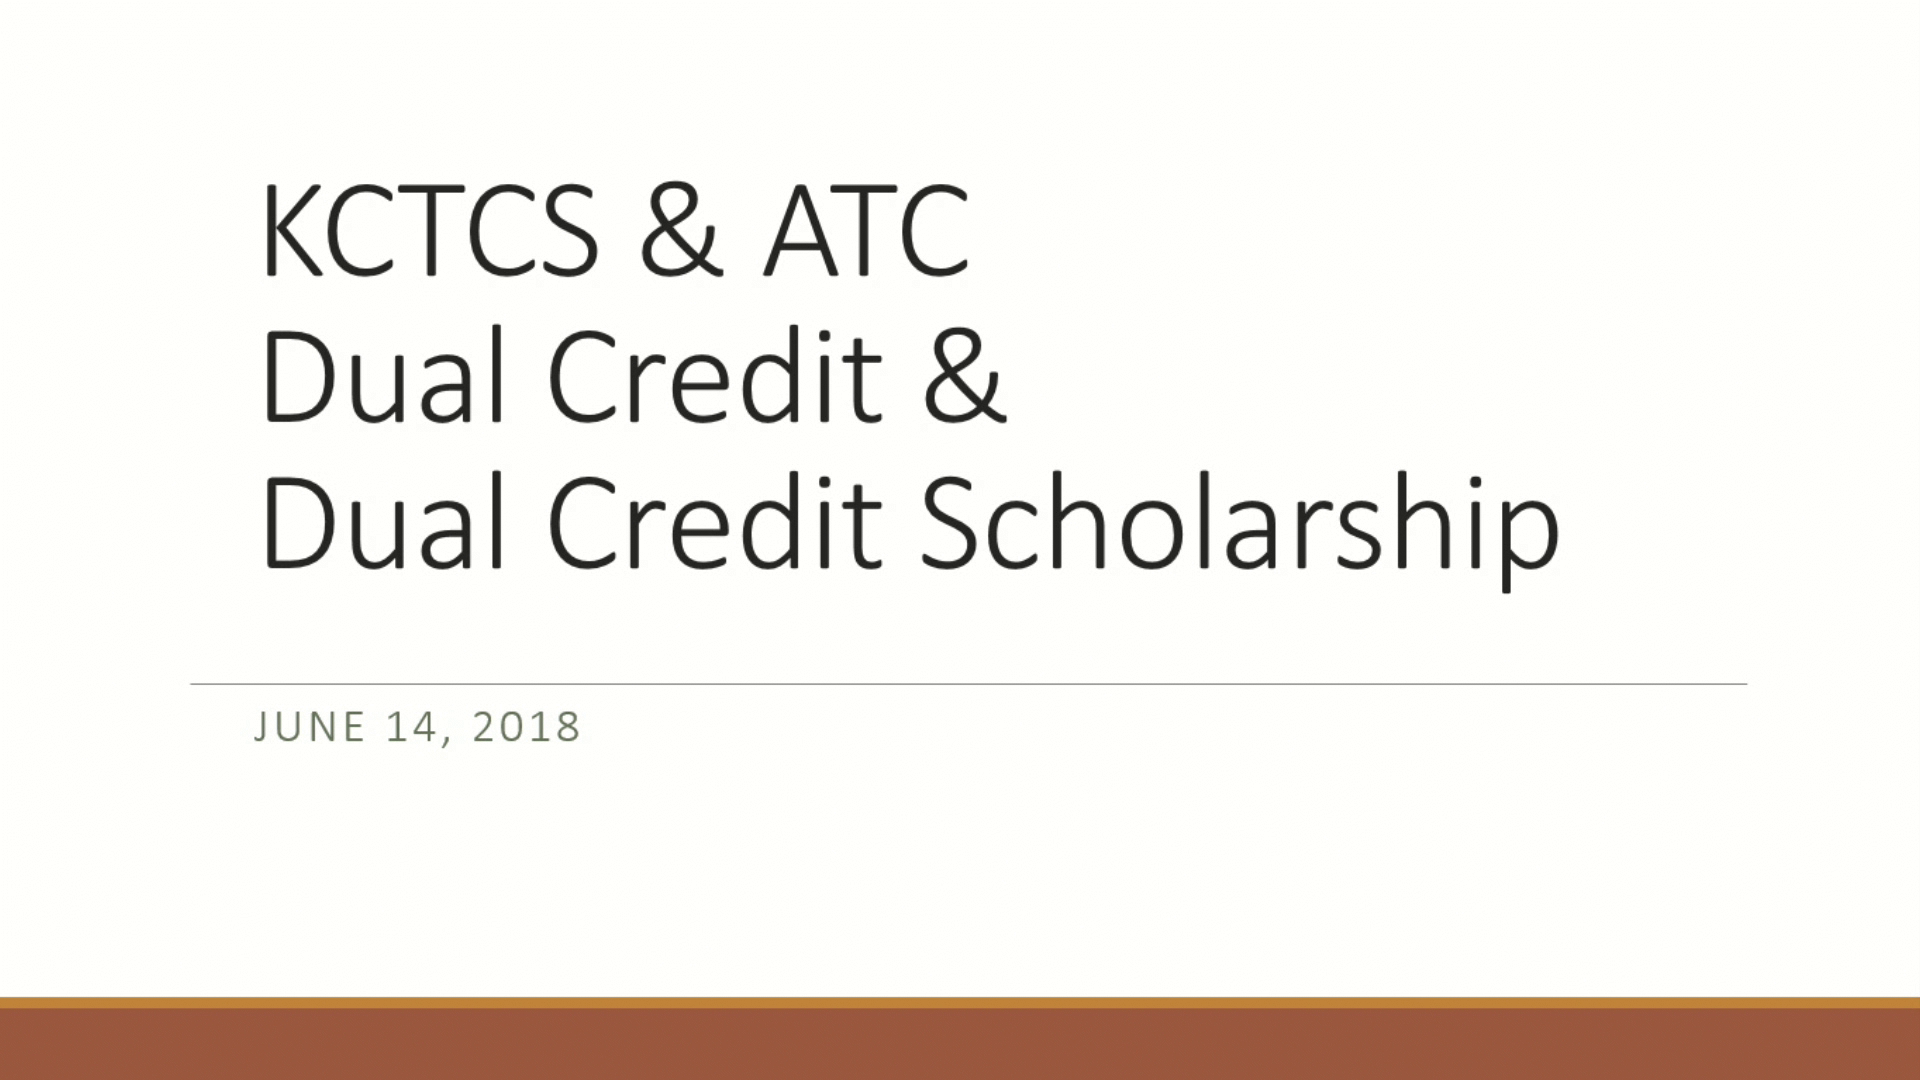 KCTCS & ATC: Dual Credit & DC Scholarship